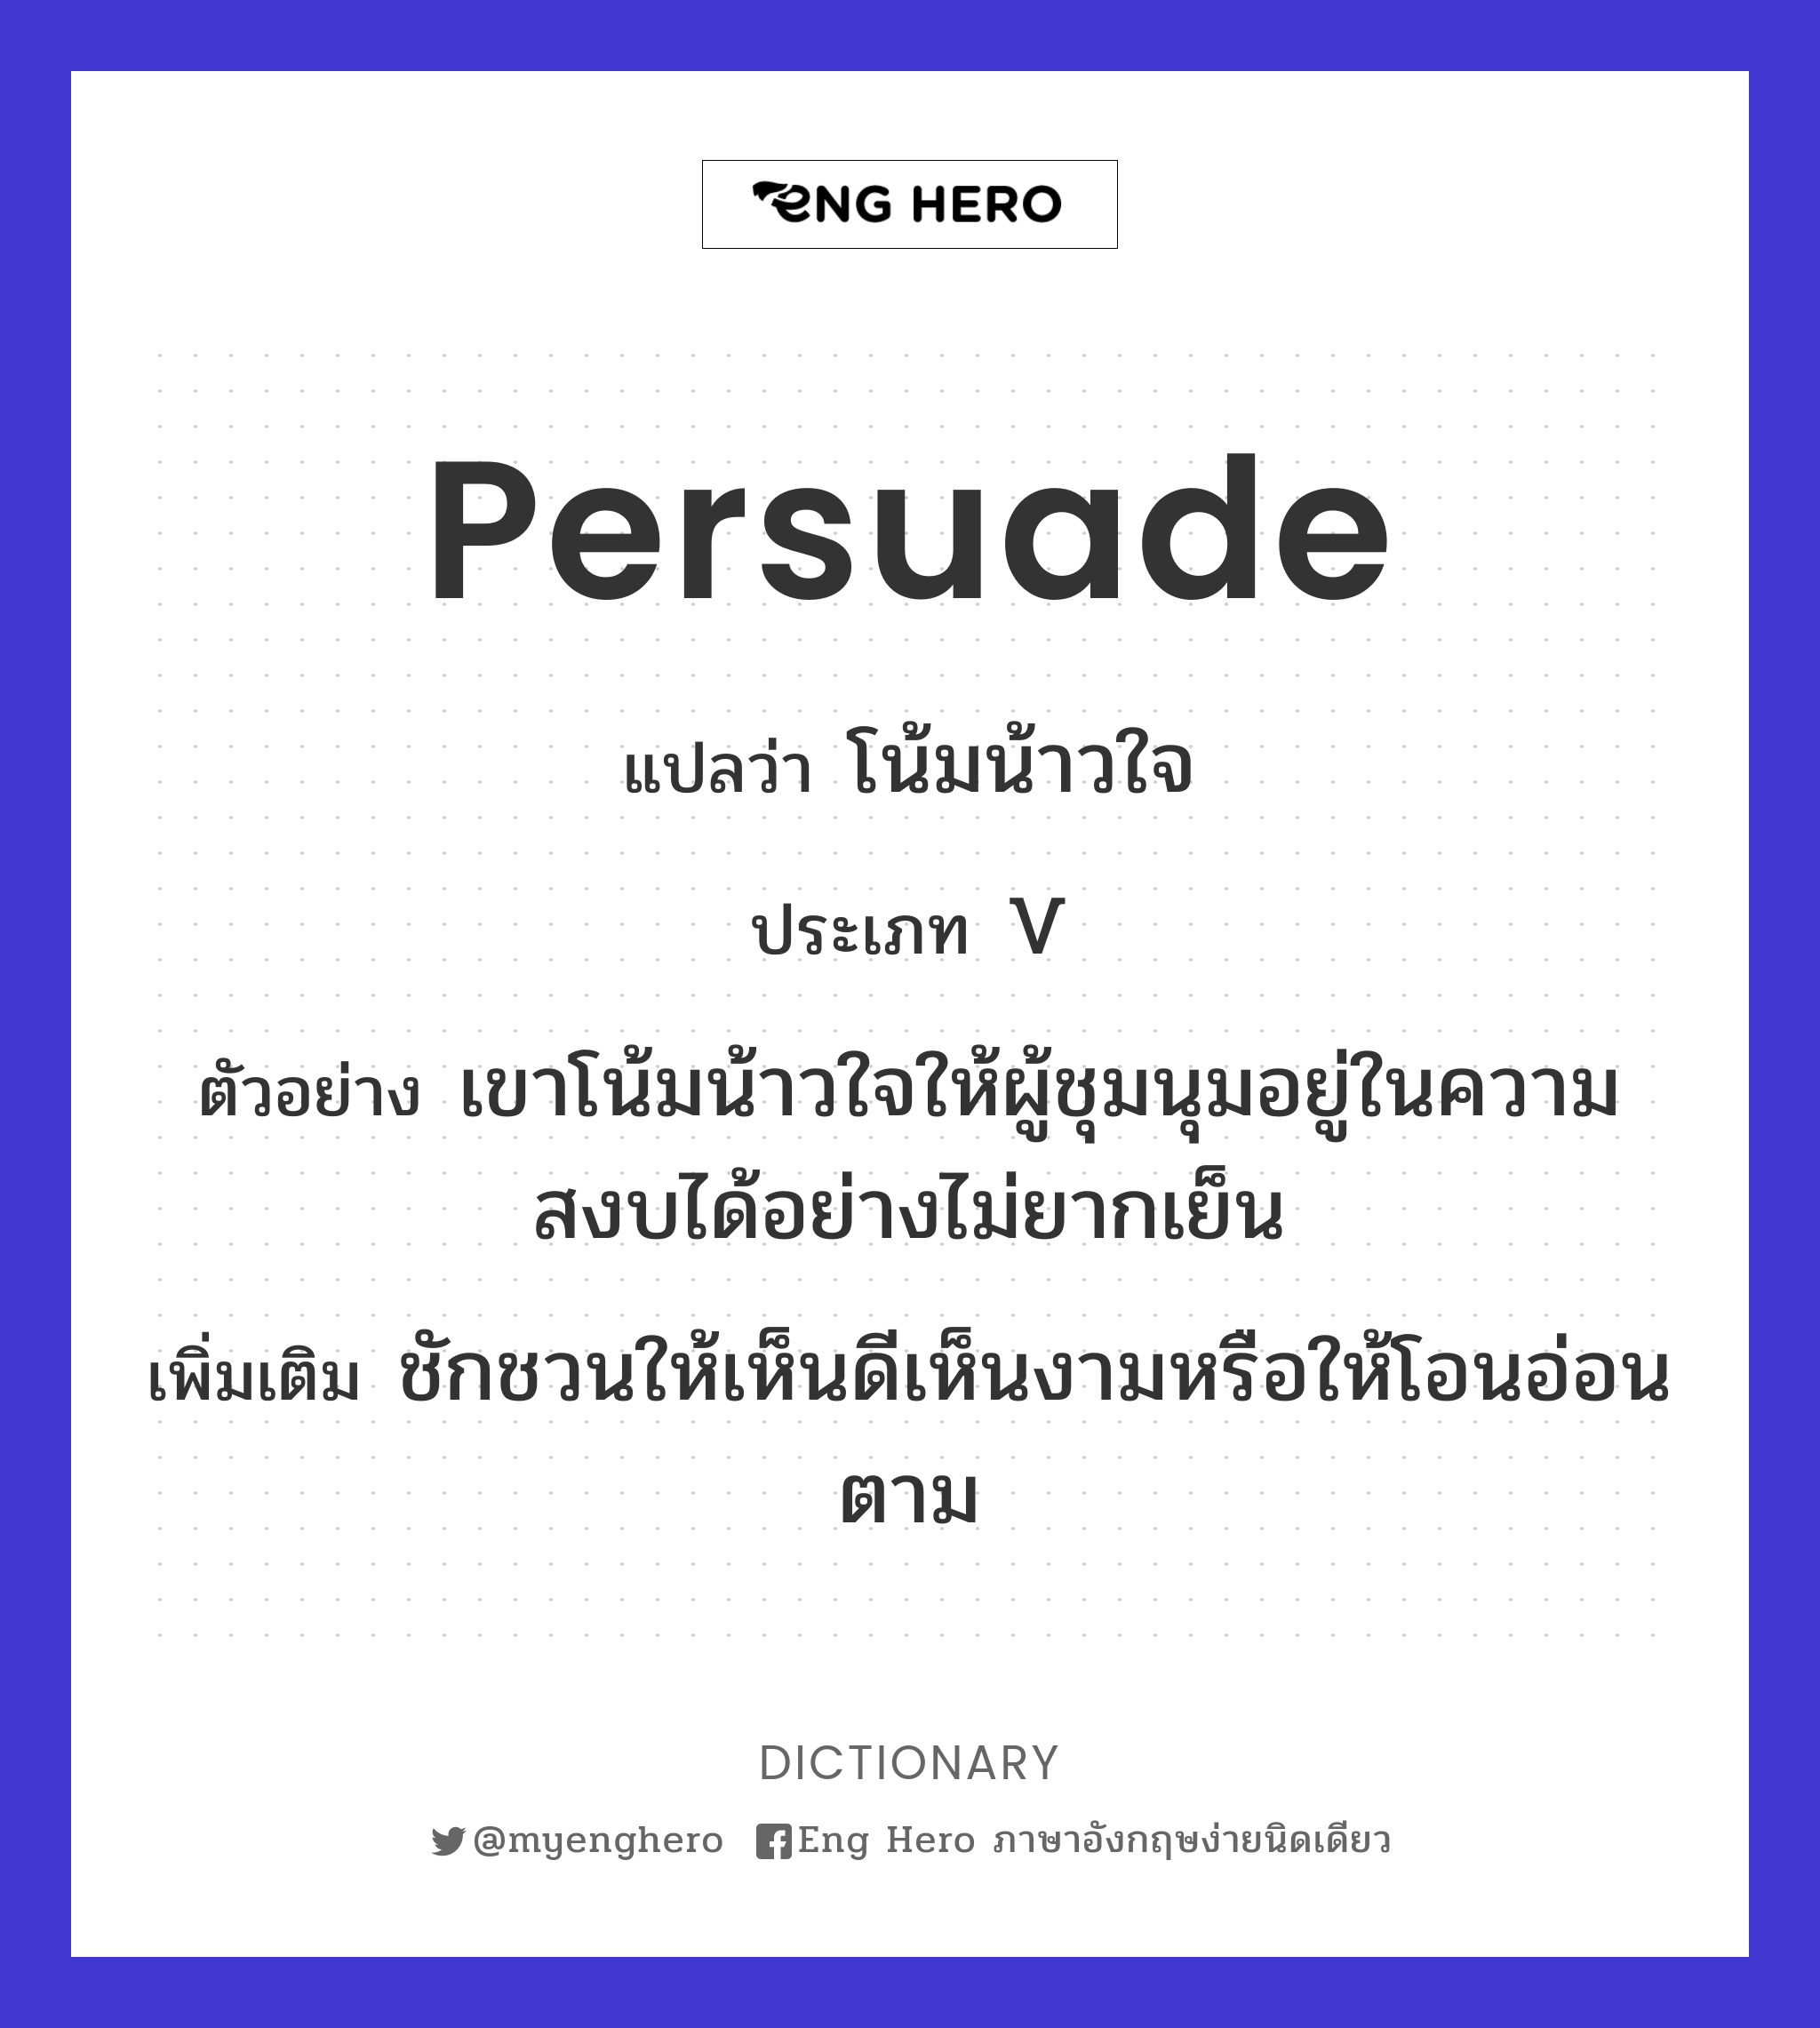 persuade